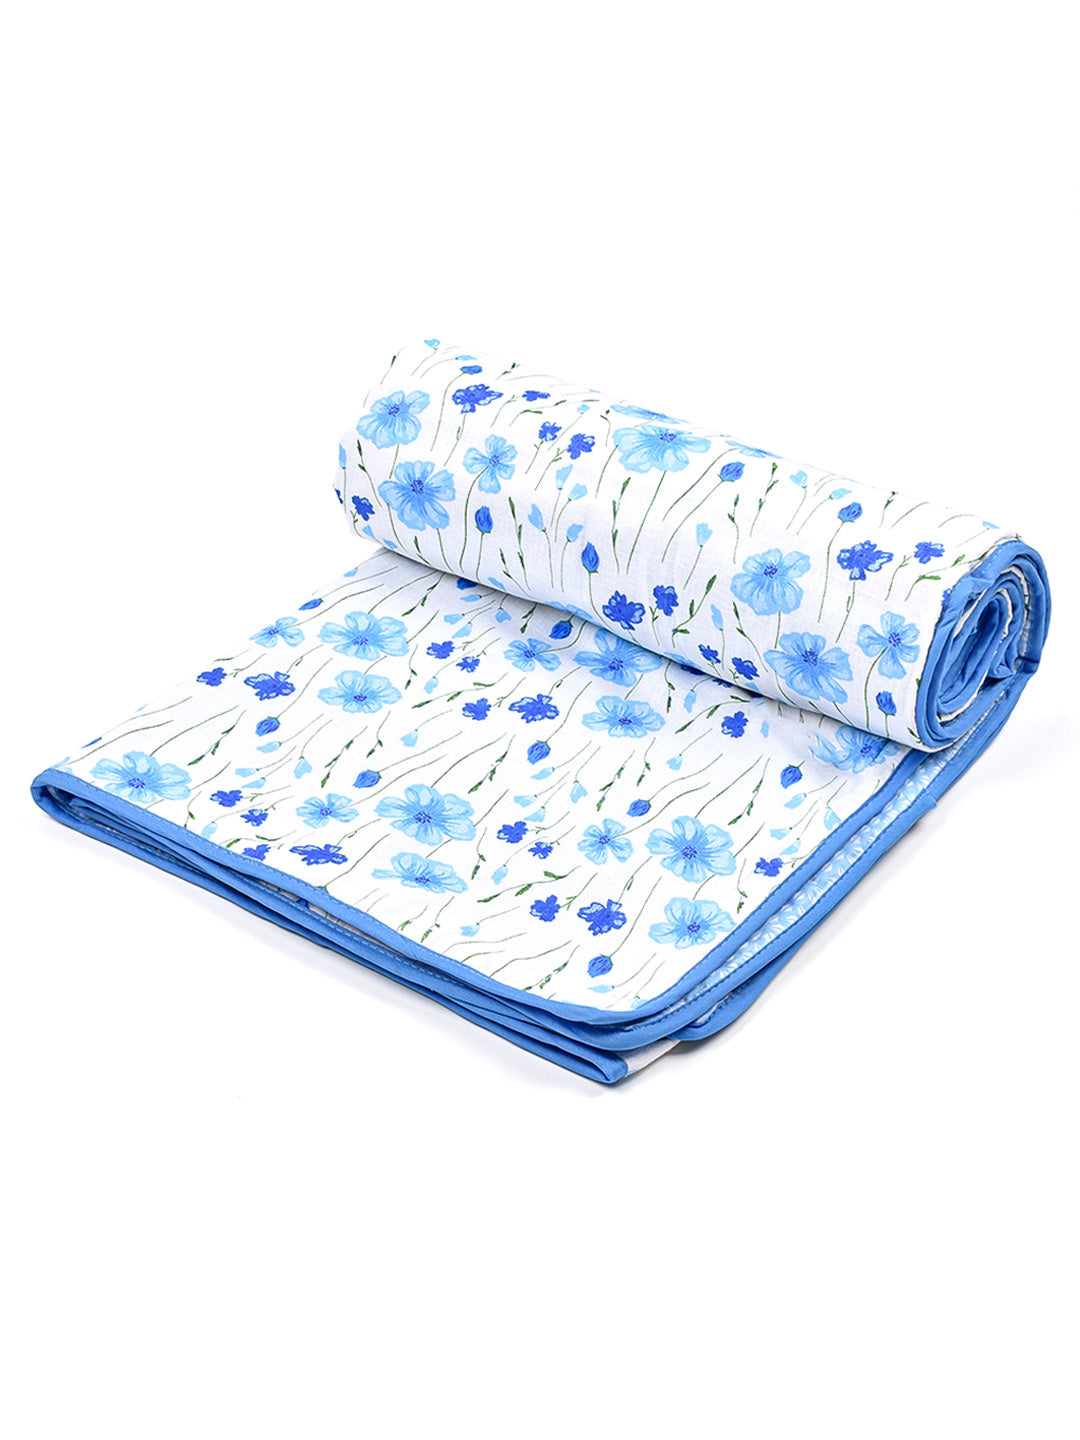 Moms Home Kids Pure Cotton Reversible Dohar, AC Blanket Comforter, Soft Light-Weight Blanket (Blue Floral)